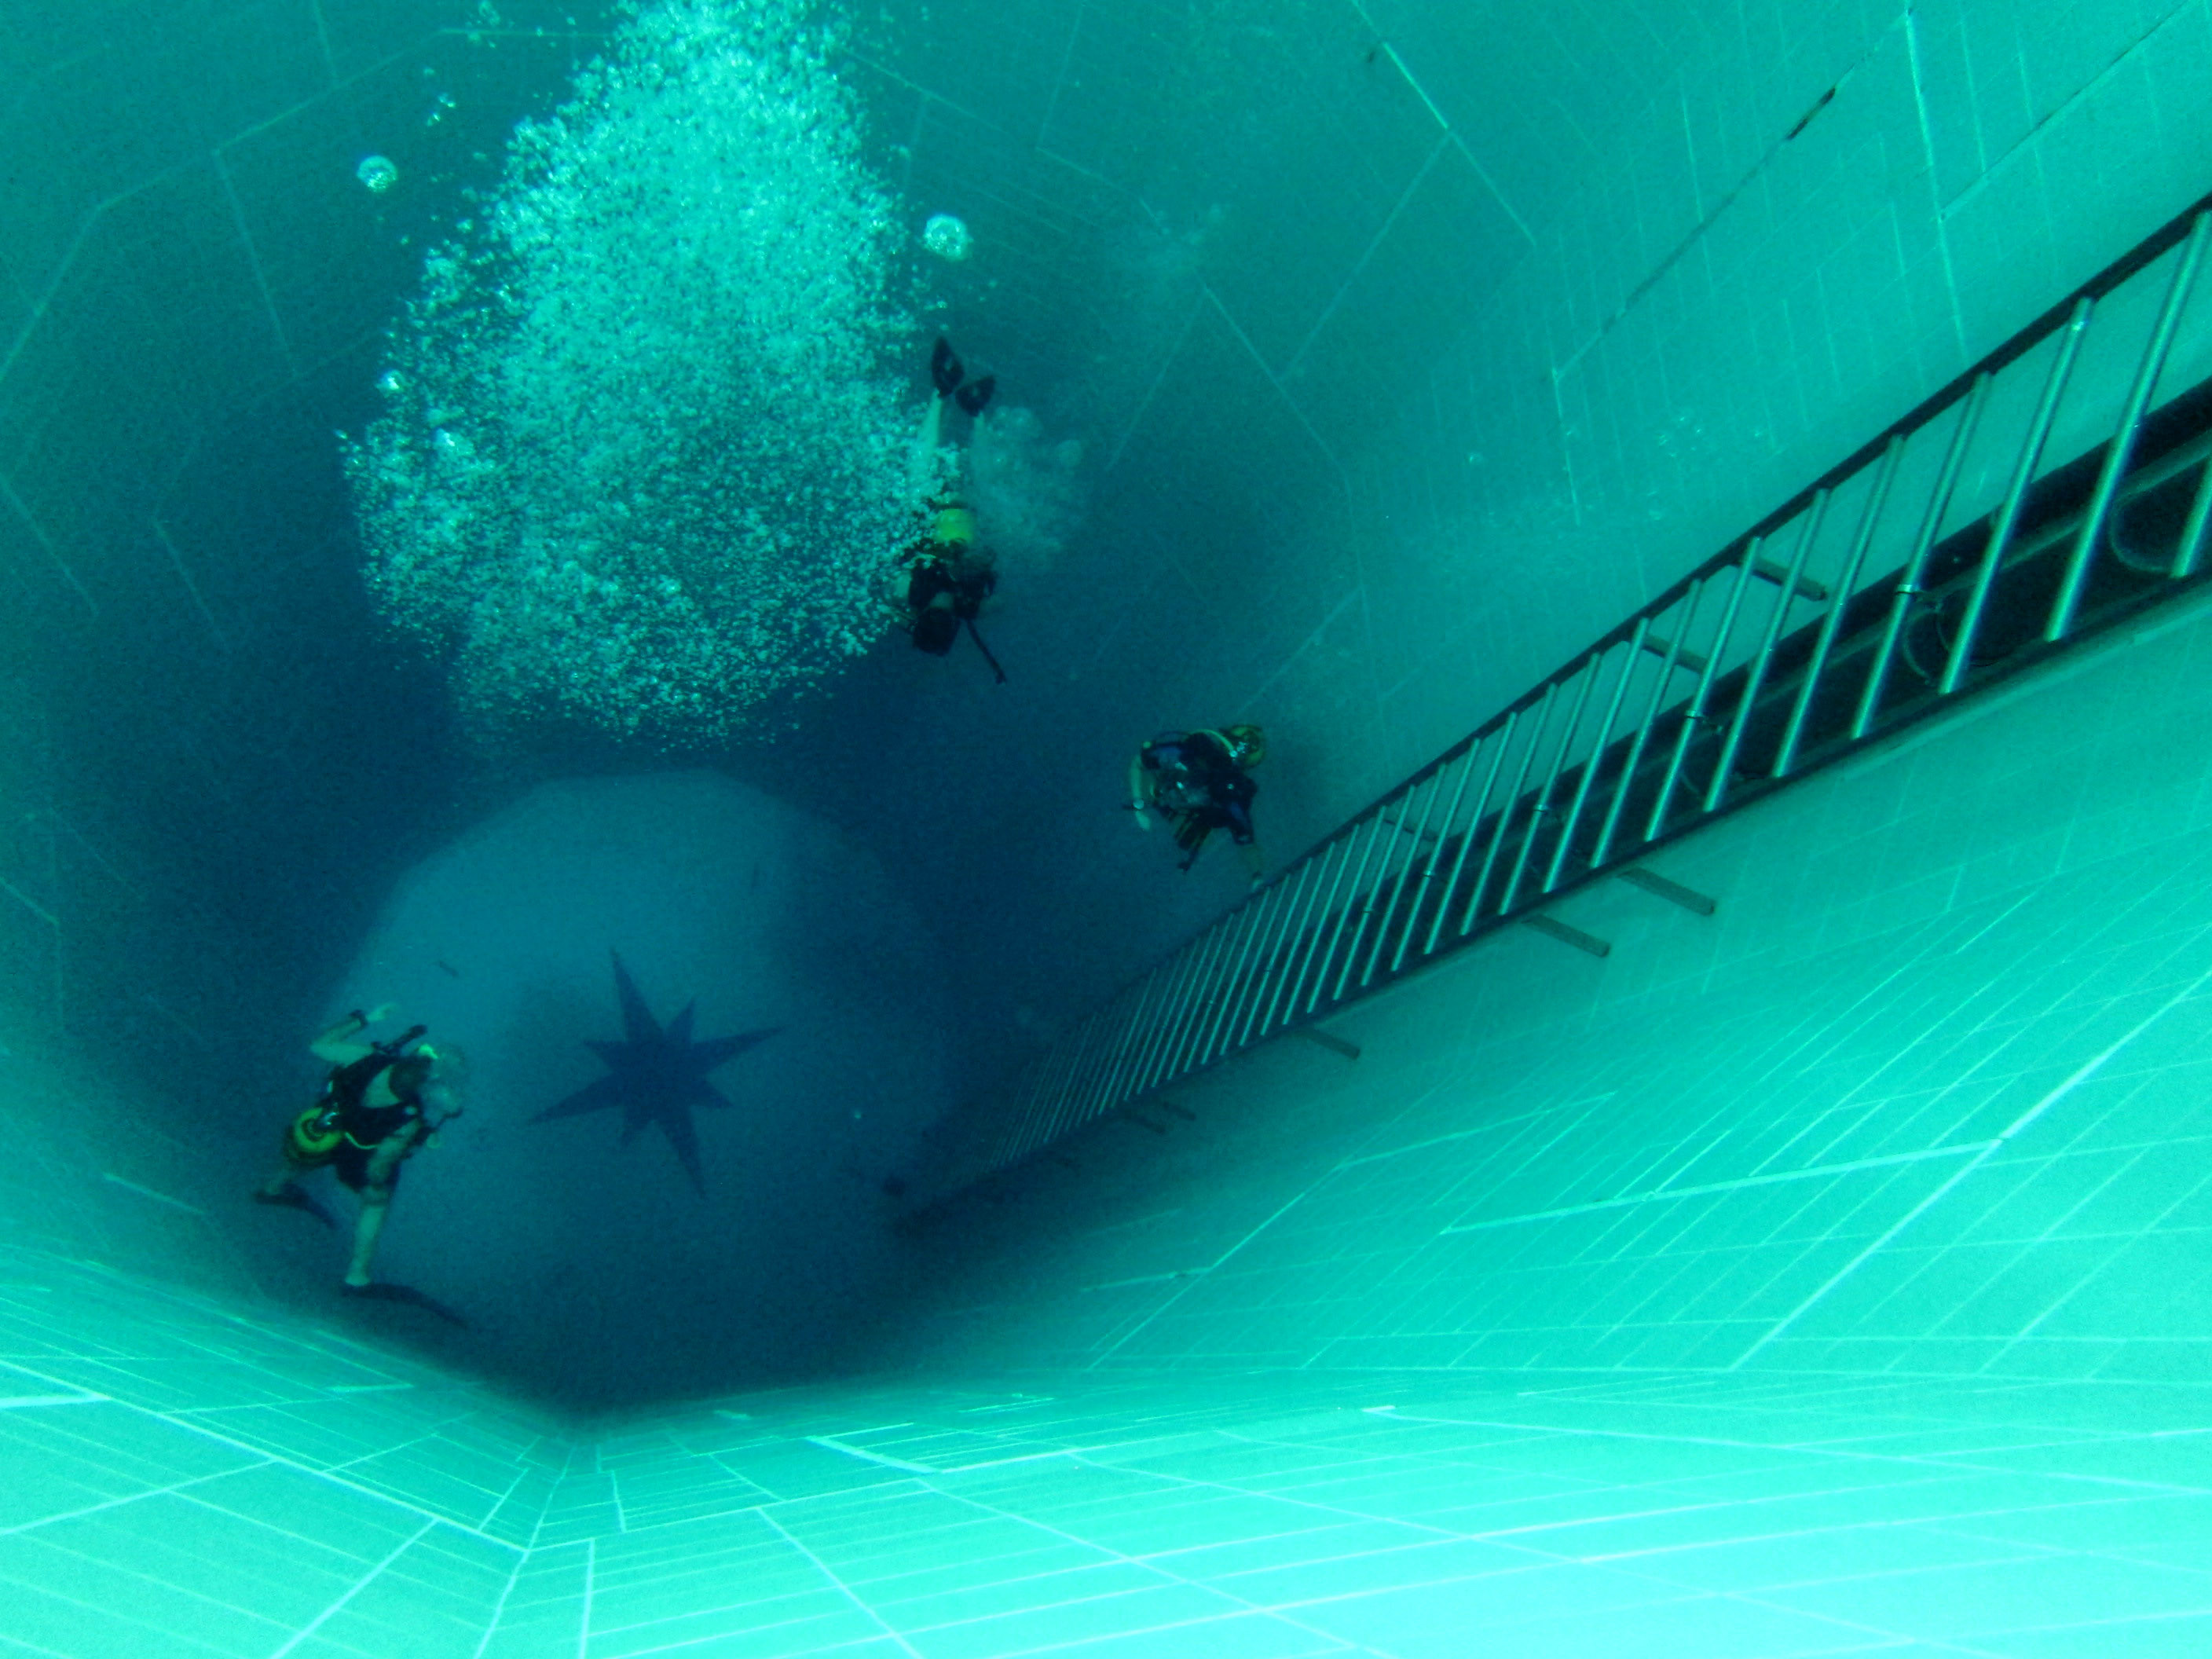 Жуткий бассейн. Самый глубокий бассейн в мире Немо 33. Немо 33 Бельгия. Немо 33 бассейн в Брюсселе. Немо 33 бассейн глубина.